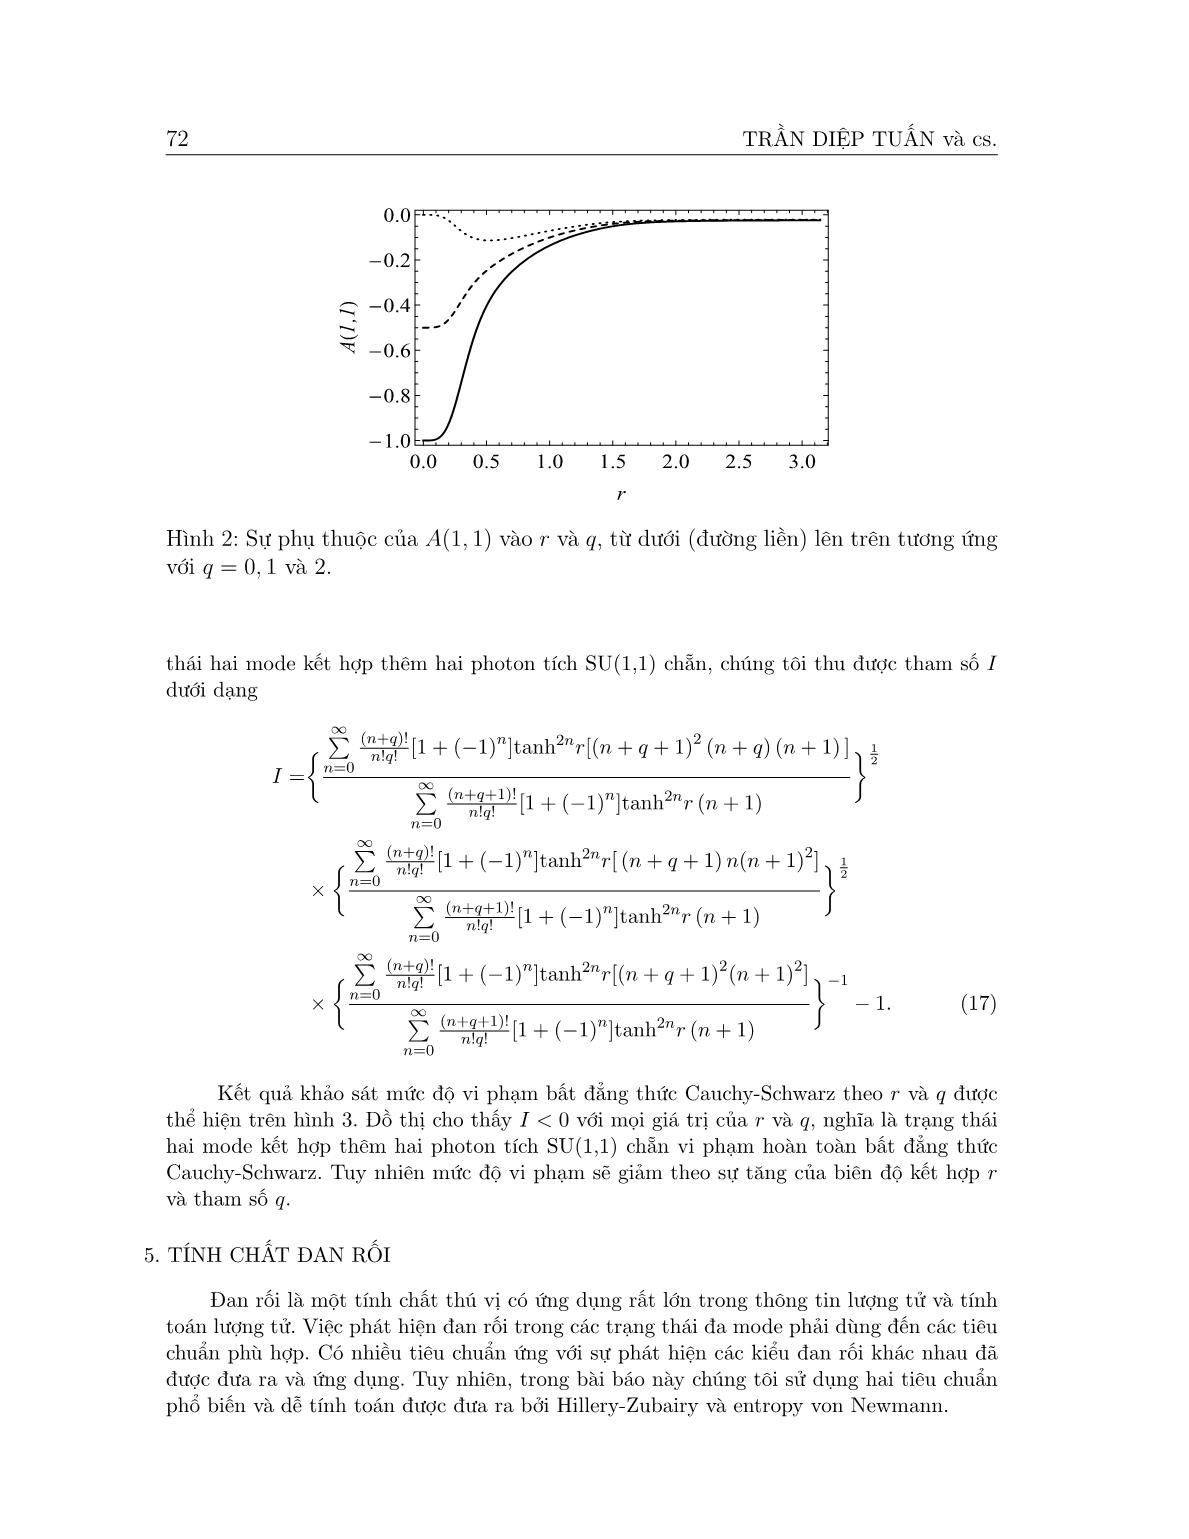 Các tính chất phi cổ điển của trạng thái hai mode kết hợp thêm hai photon tích su(1,1) chẵn trang 5